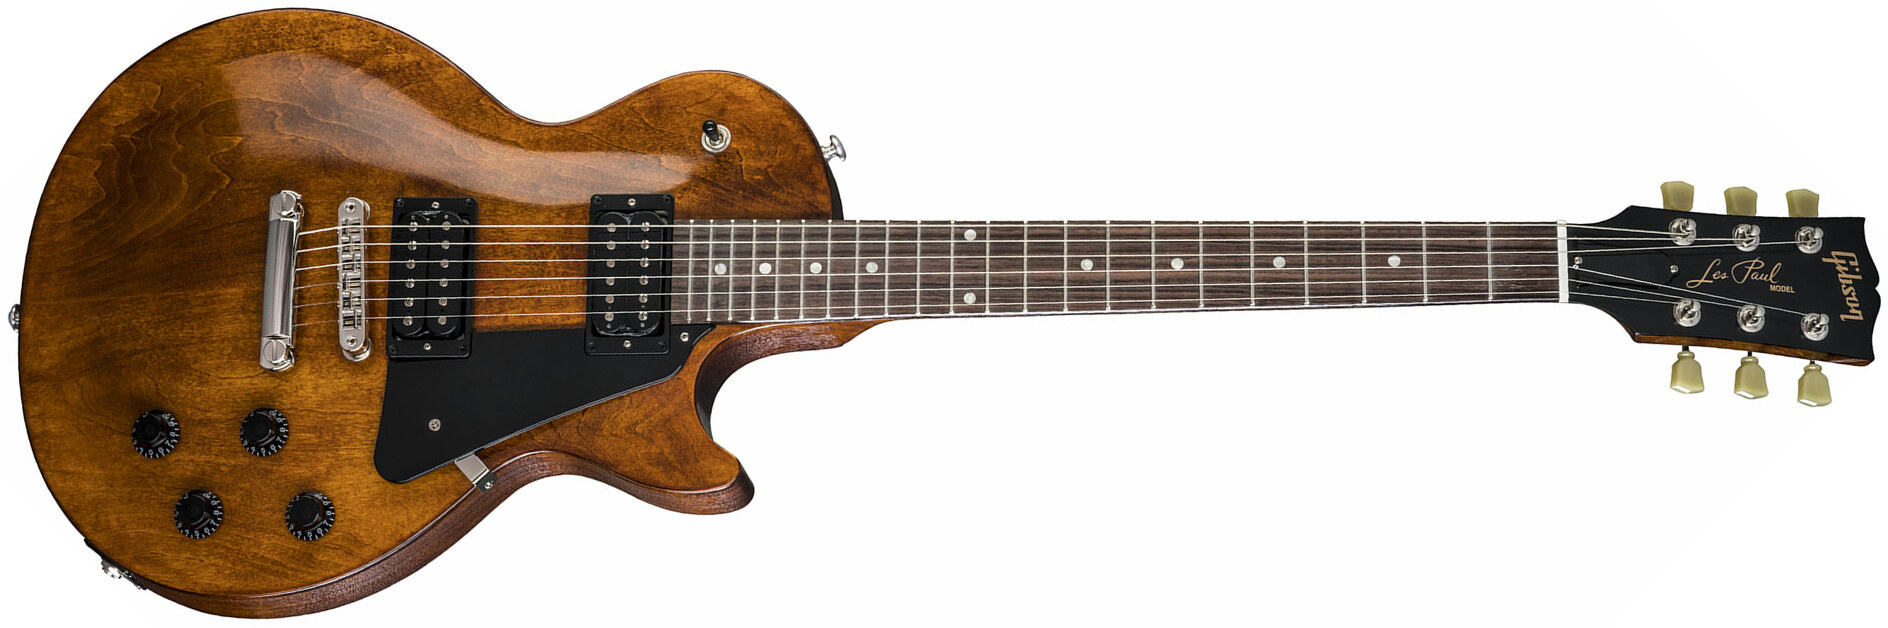 Gibson Les Paul Faded 2018 - Worn Bourbon - Enkel gesneden elektrische gitaar - Main picture